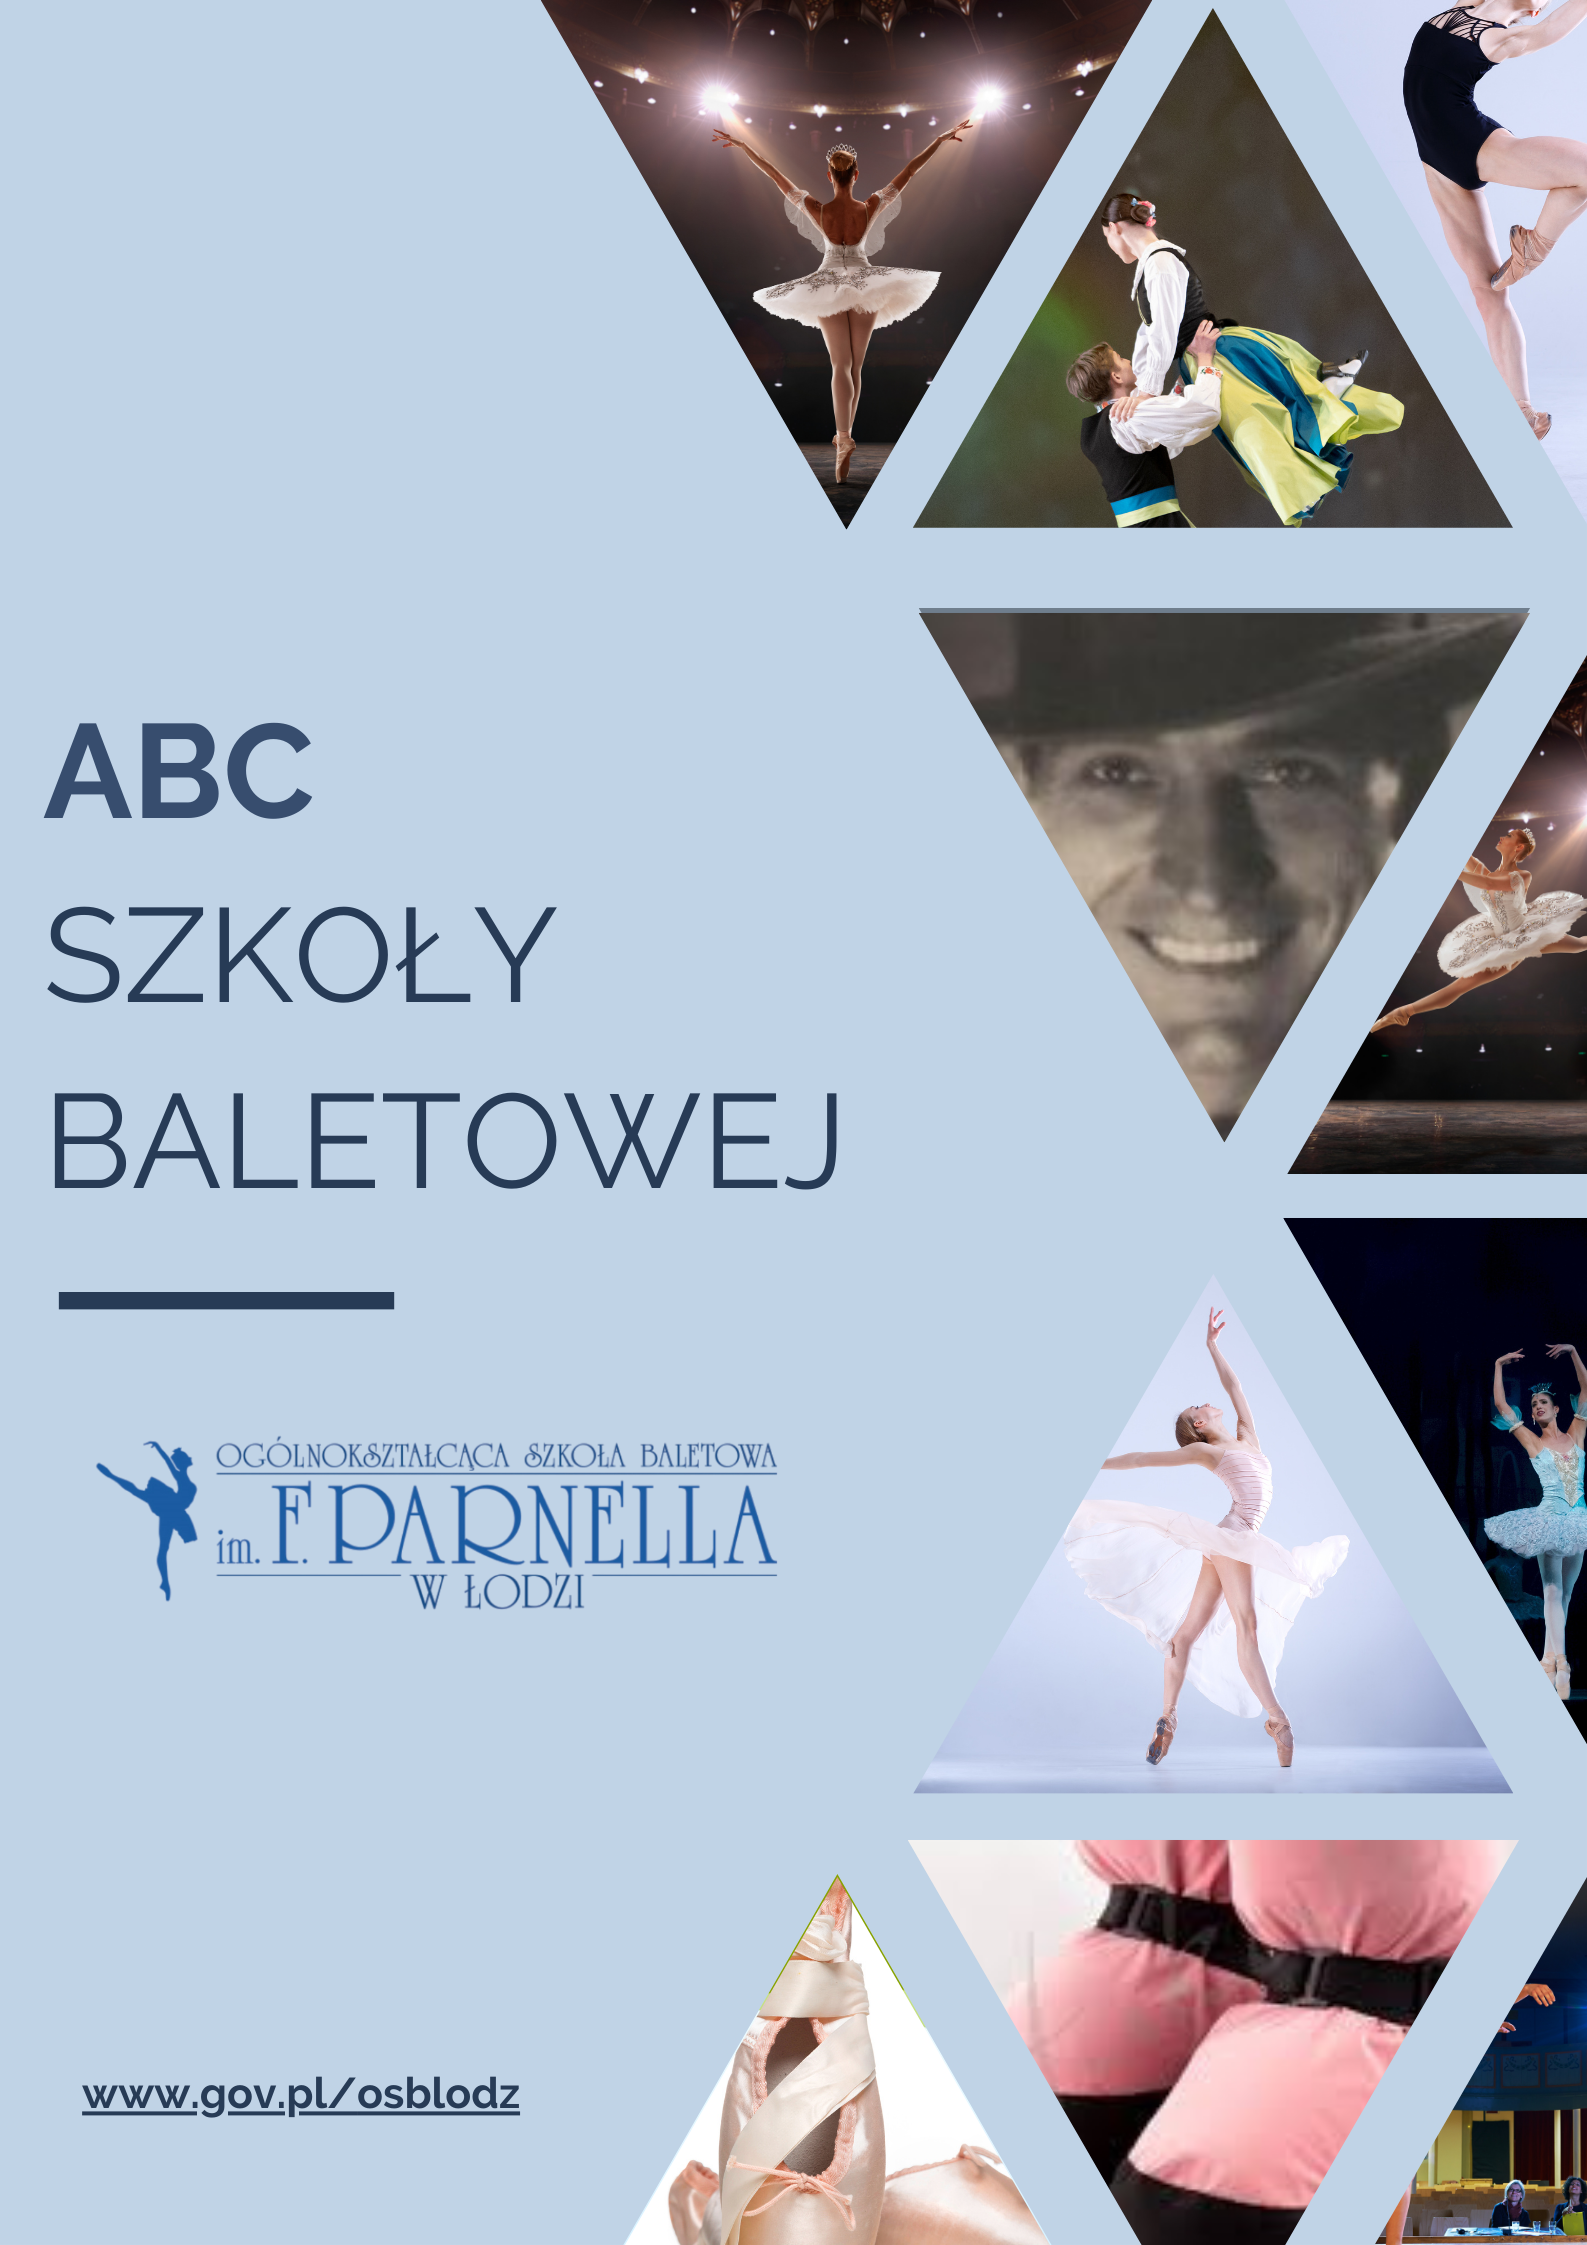 ABC Szkoły Baletowej